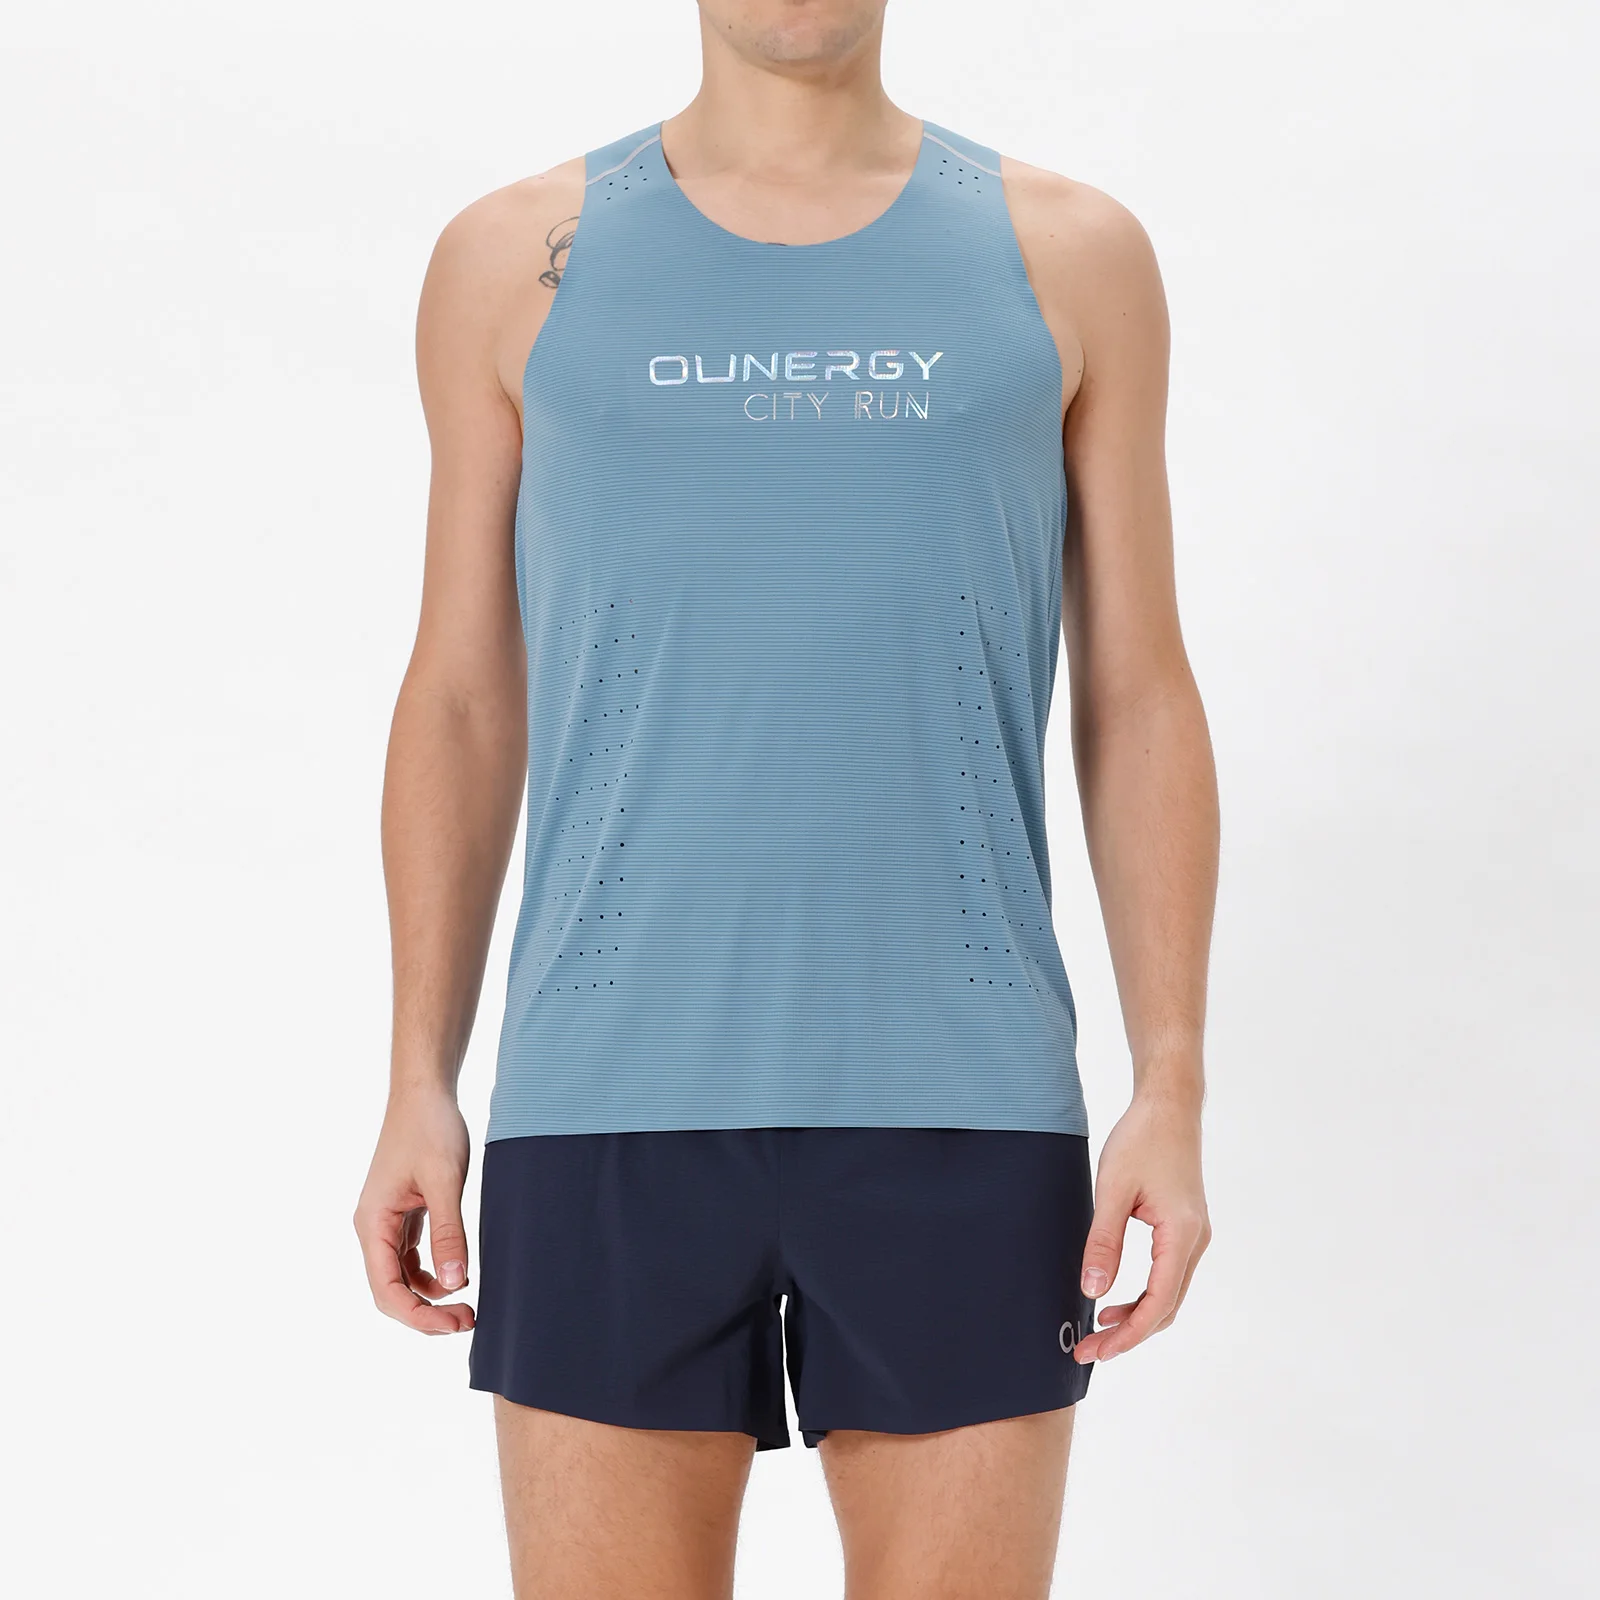 

Мужской Быстросохнущий Спортивный Жилет AONIJIE FM5115, дышащая рубашка без рукавов, Спортивная майка для бега, фитнеса, тренажерного зала